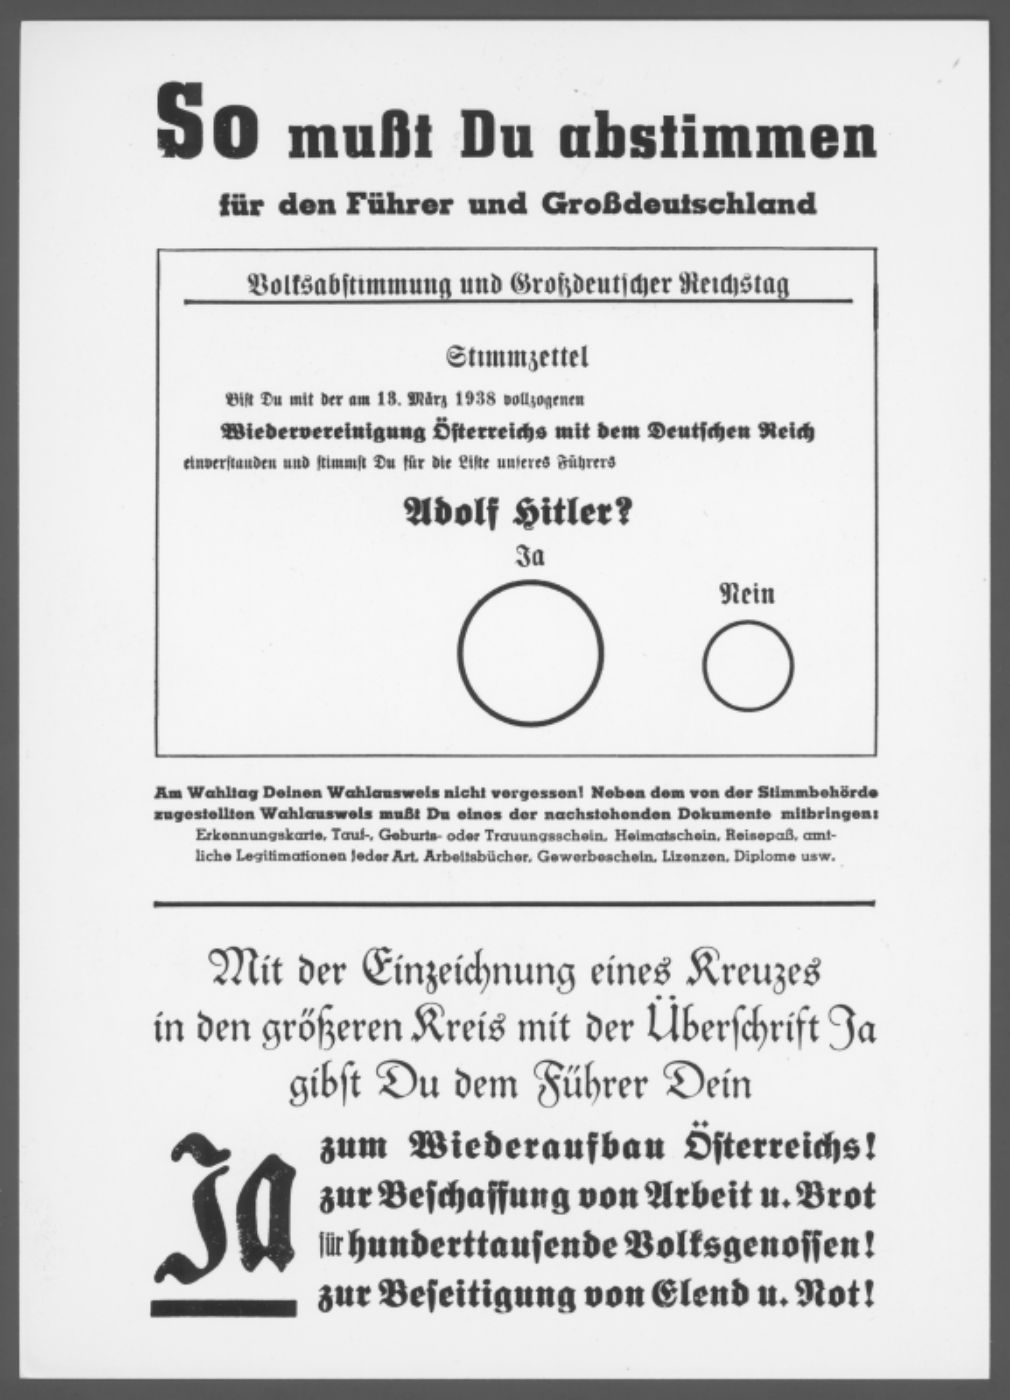 Abbildung eines Stimmzettels für die Volksabstimmung am 10. April 1938 zur Illustration. Die Überschrift auf dem Stimmzettel lautet: "So mußt Du abstimmen". Der Kreis für "Ja" ist größer als der Kreis für "Nein".